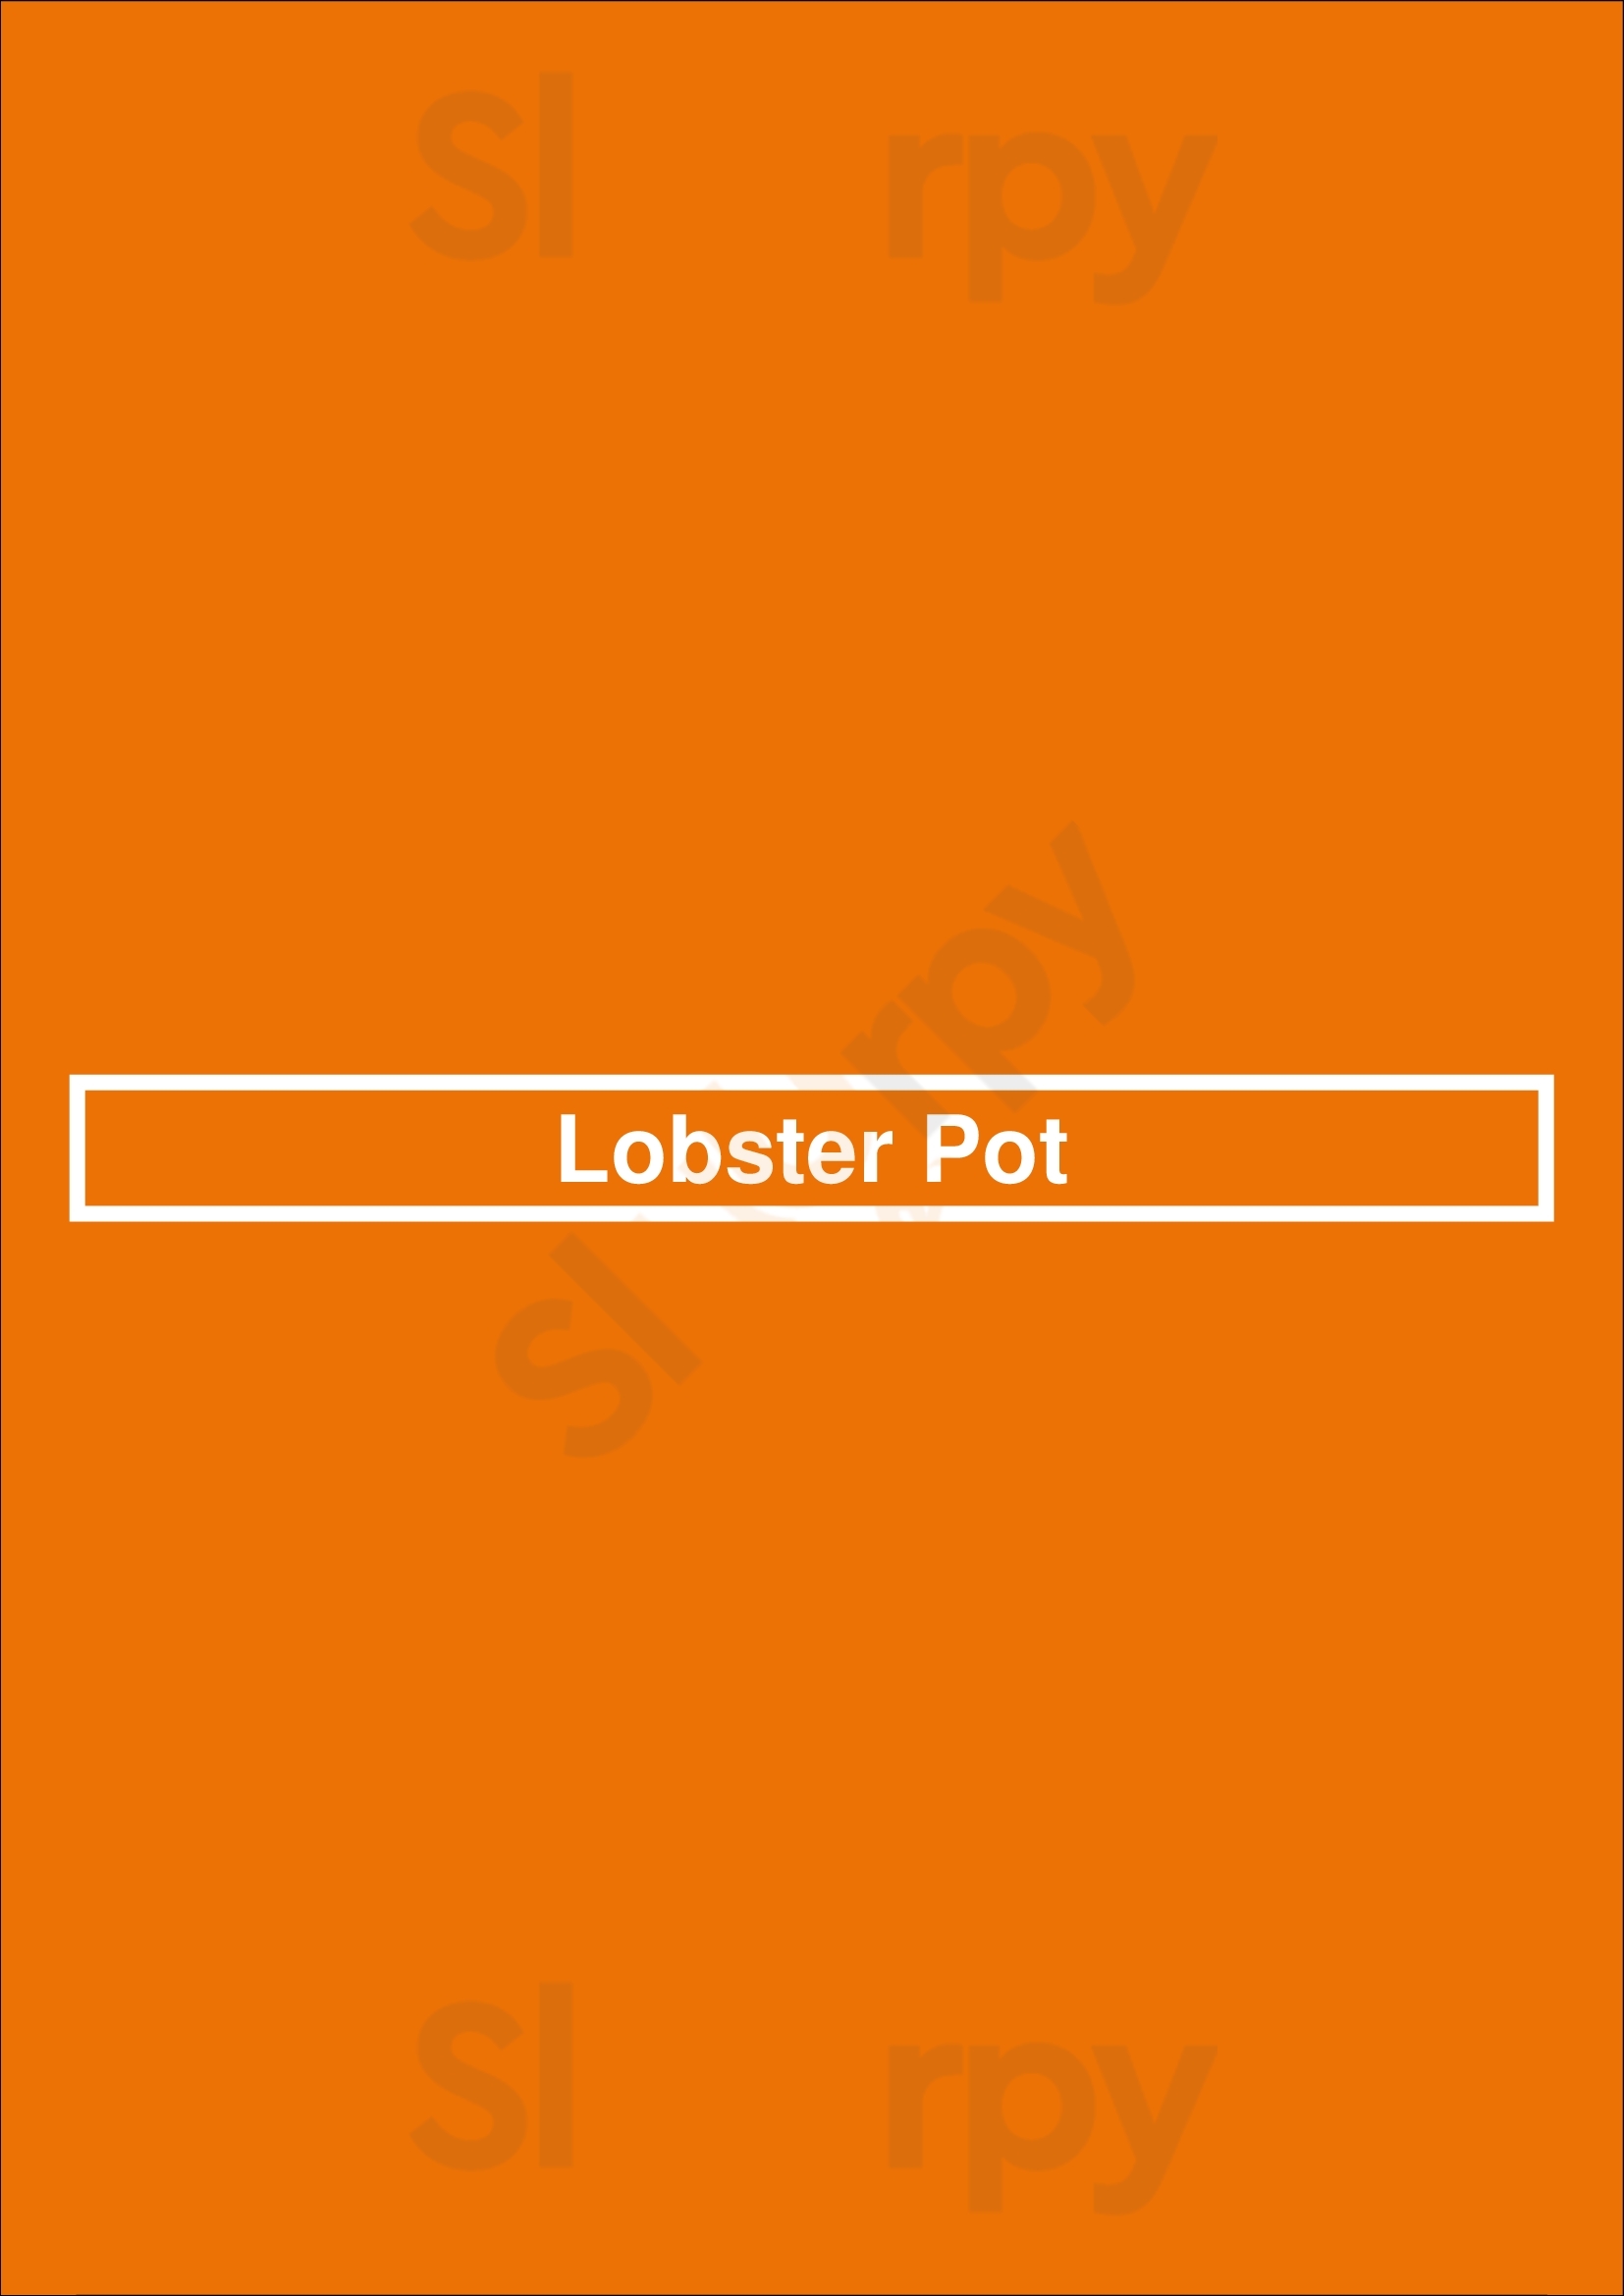 Lobster Pot Bruges Menu - 1